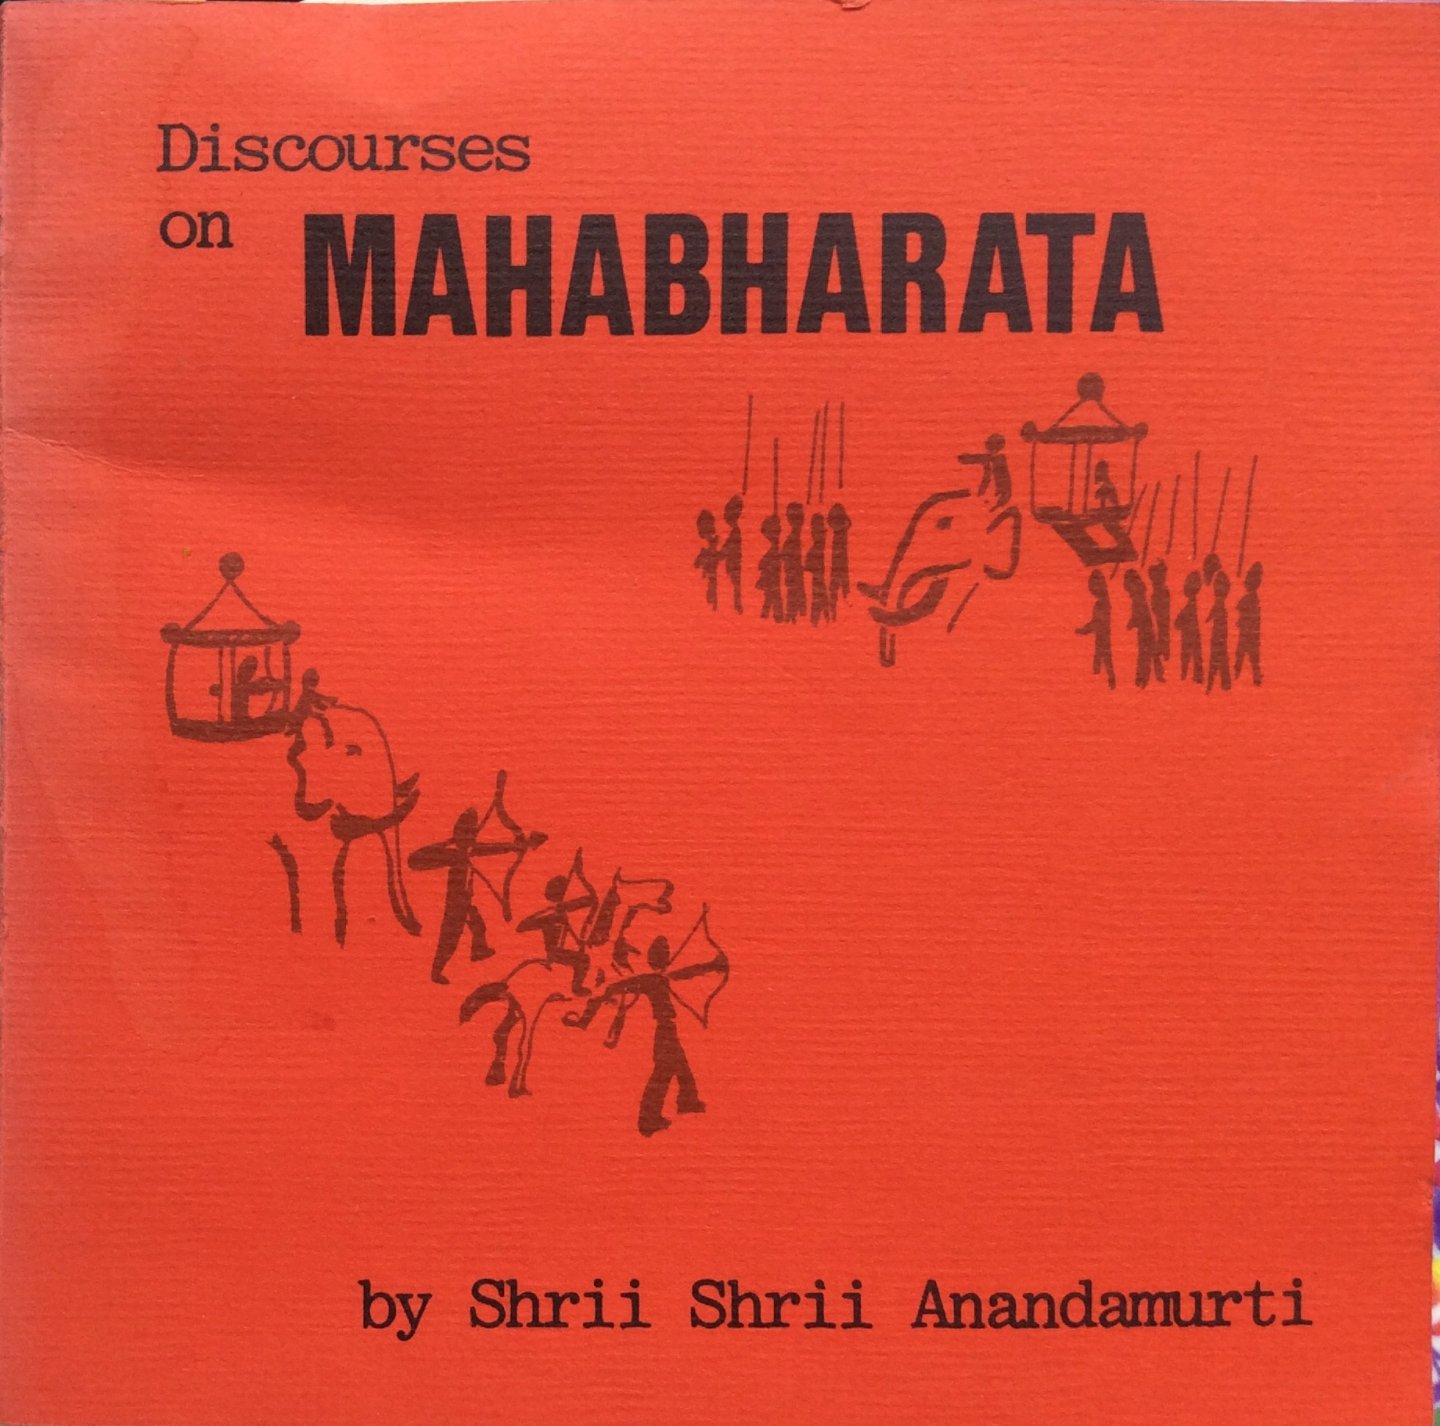 Shrii Shrii Anandamurti [Shrii Prabhat Rainjan Sarkar / A'nandamu'rti] - Discourses on Mahabharata